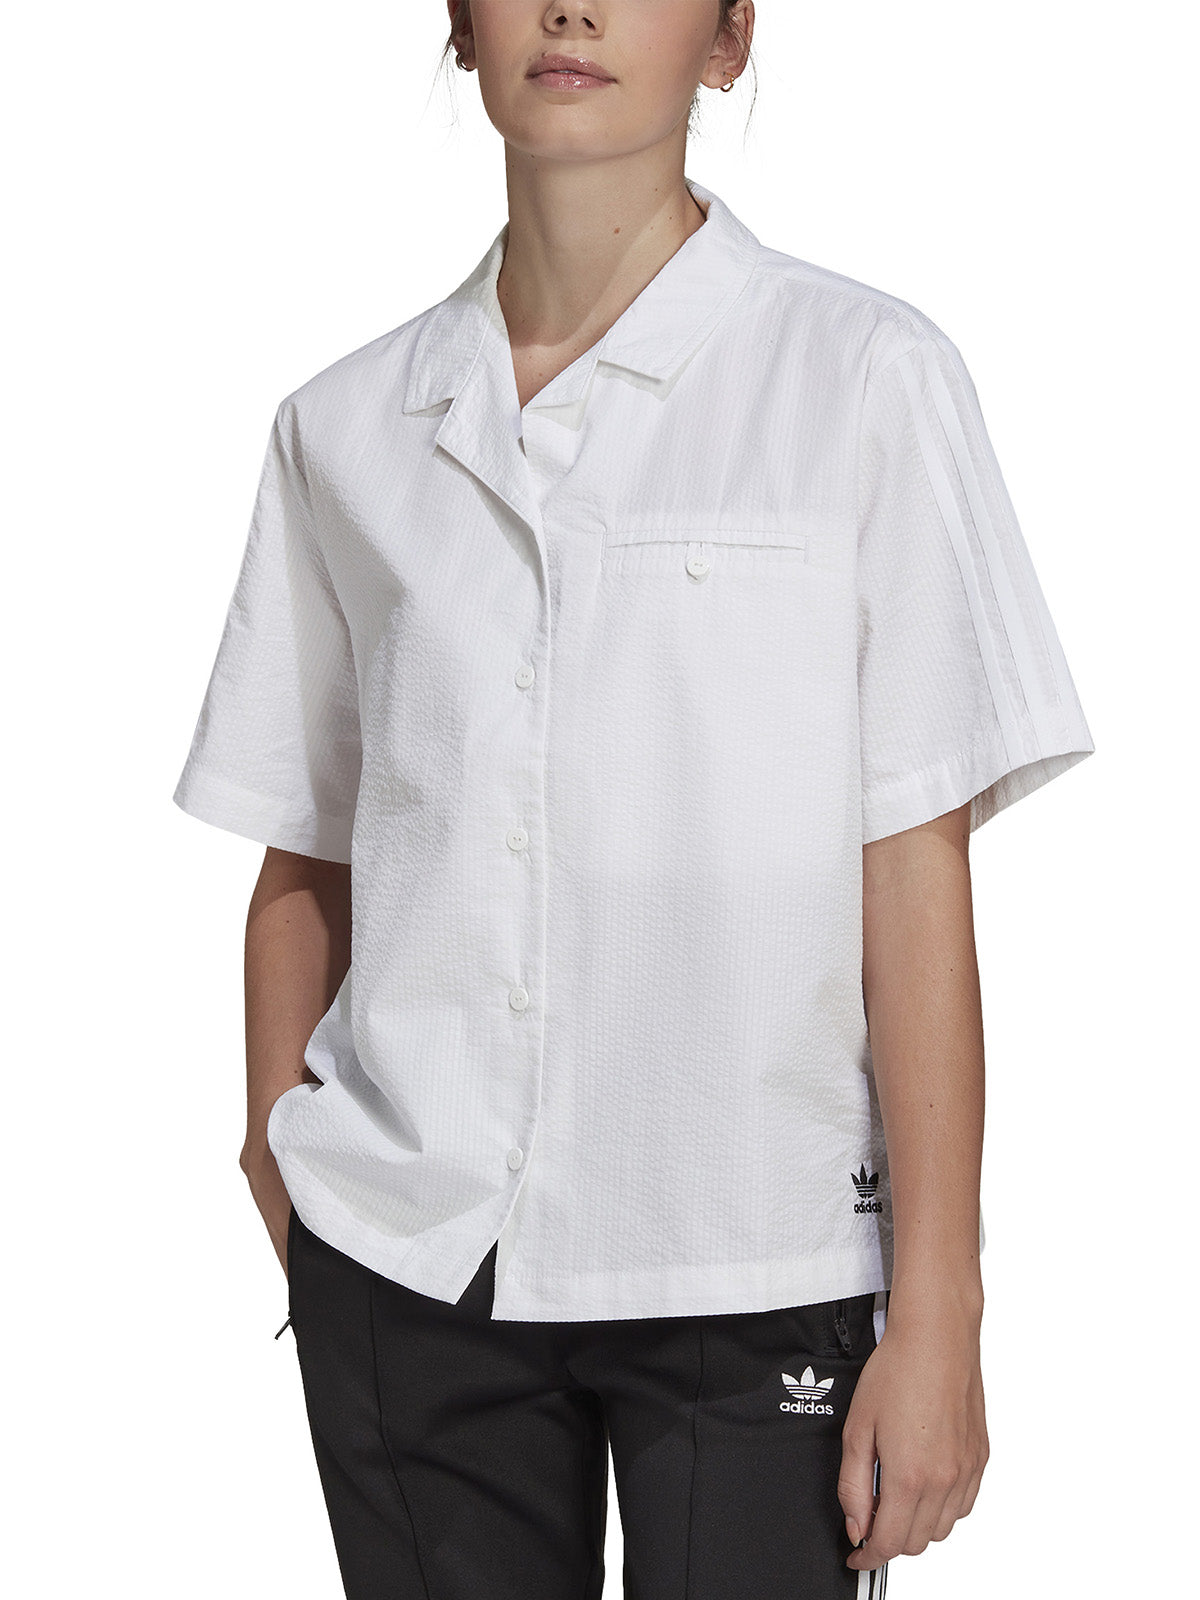 Bluse e camicie Donna Adidas - Adicolor Classics Poplin Shirt - Bianco